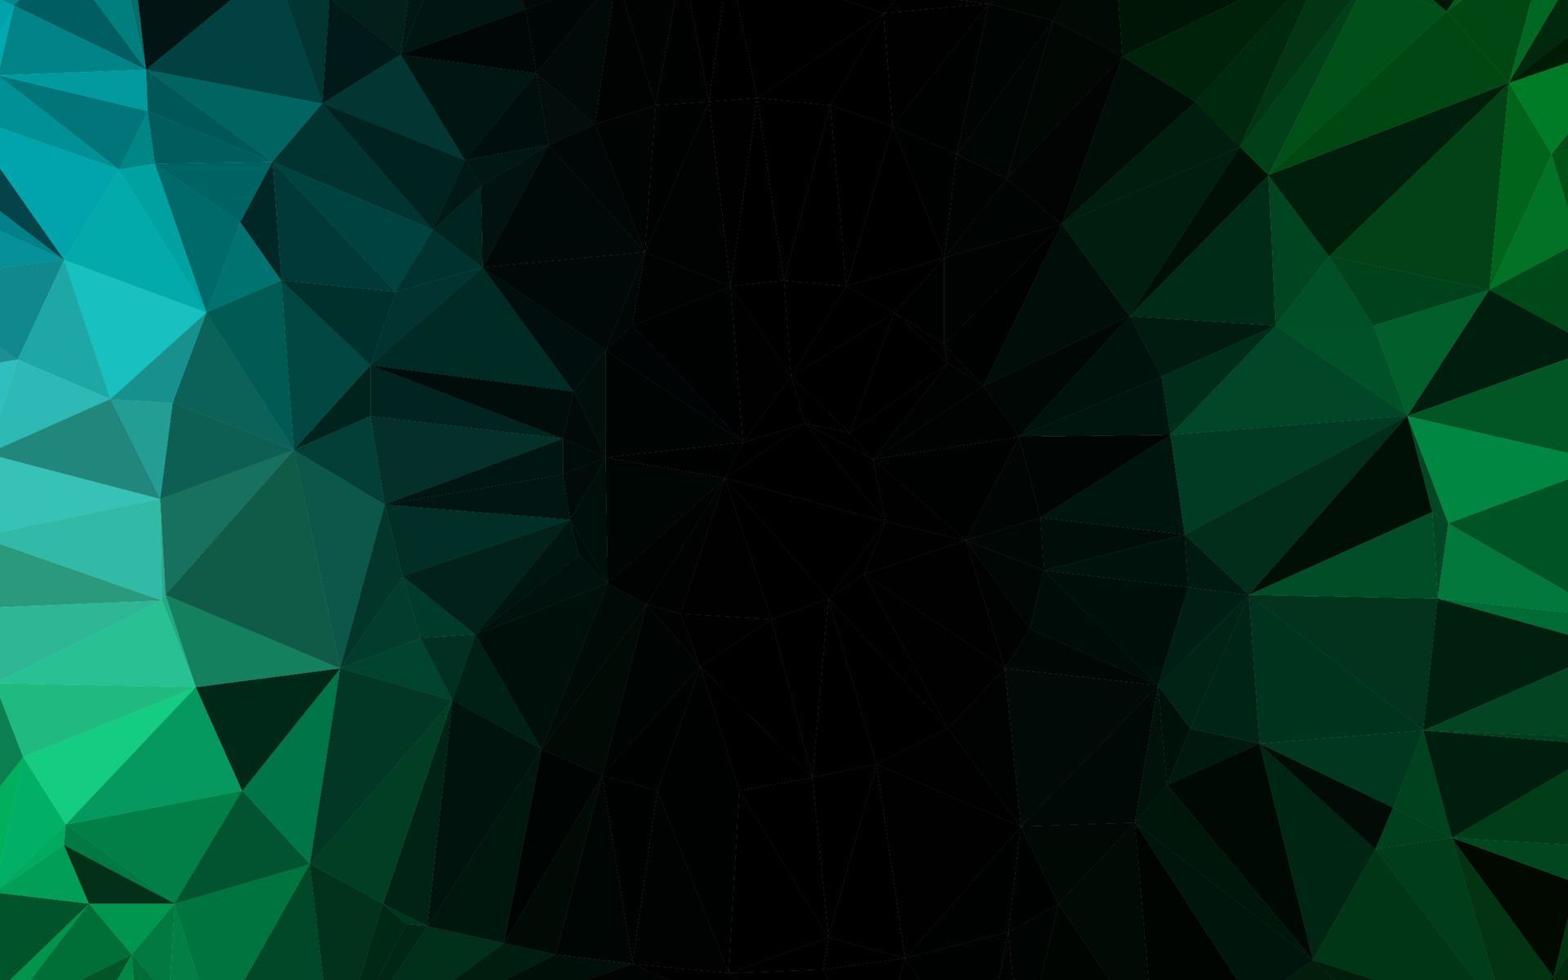 dunkelblaue, grüne Vektor abstrakte polygonale Textur.